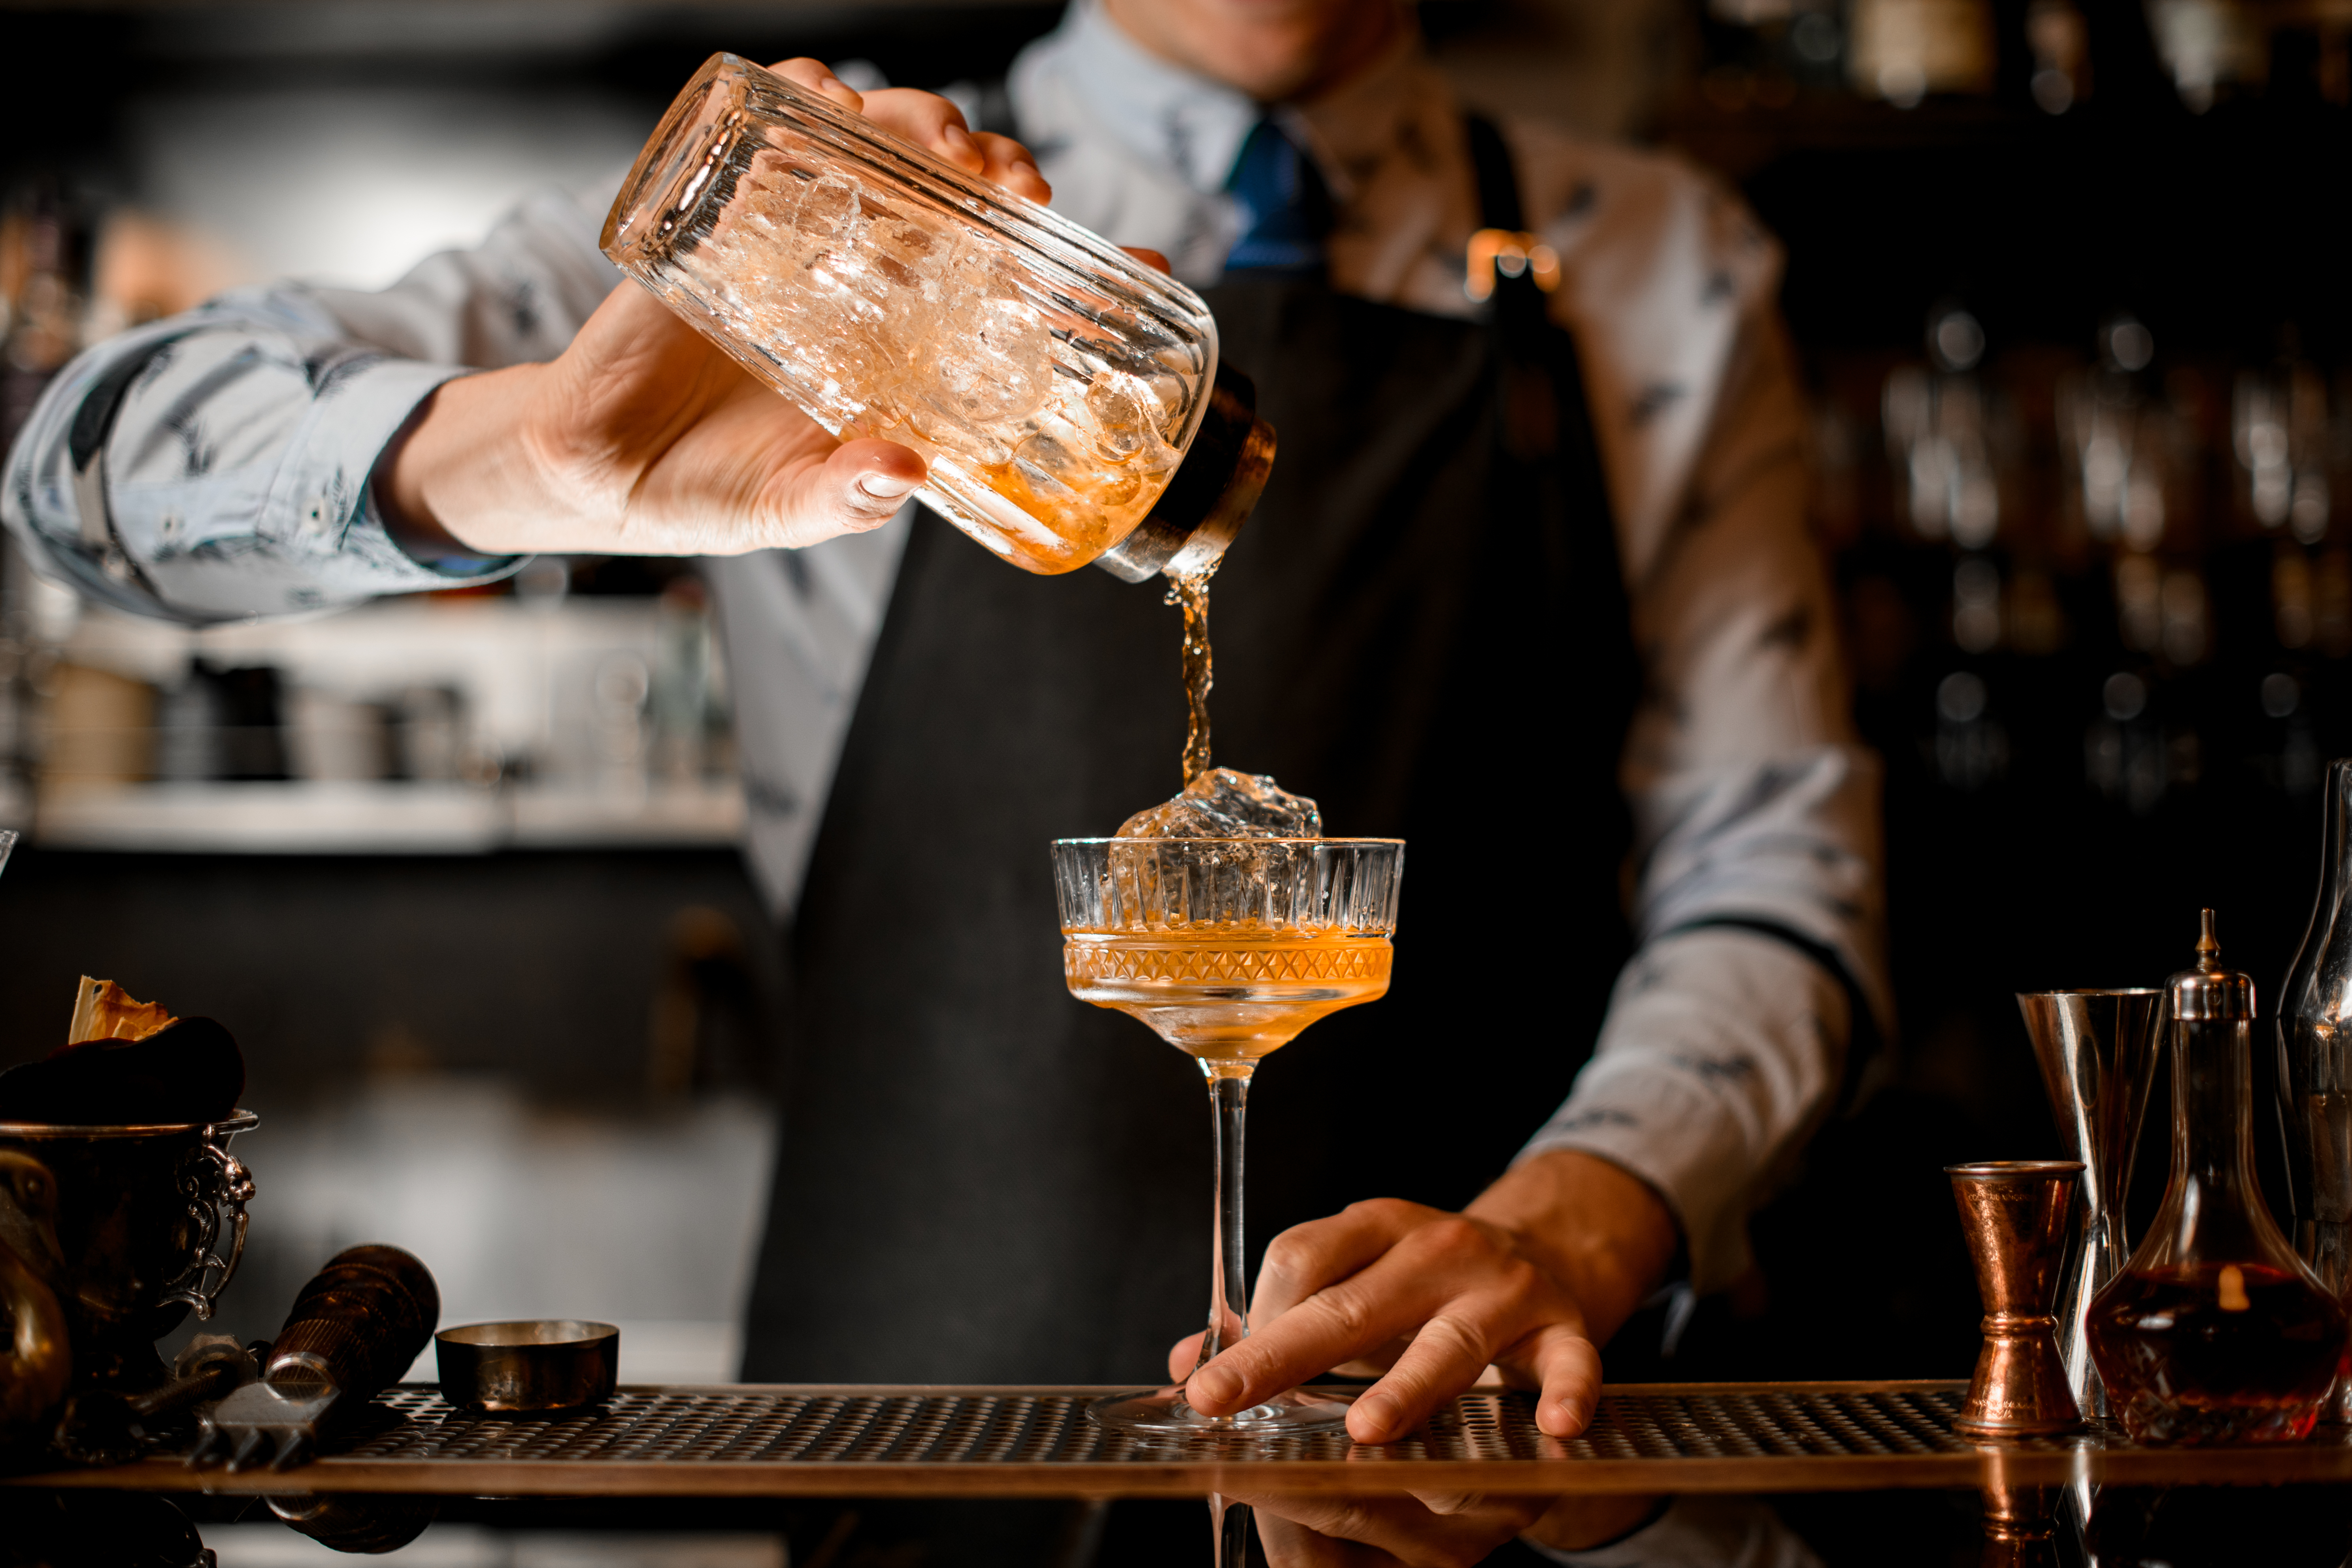 El camarero vierte suavemente el cóctel terminado de la coctelera en el vaso. | Fuente: Shutterstock